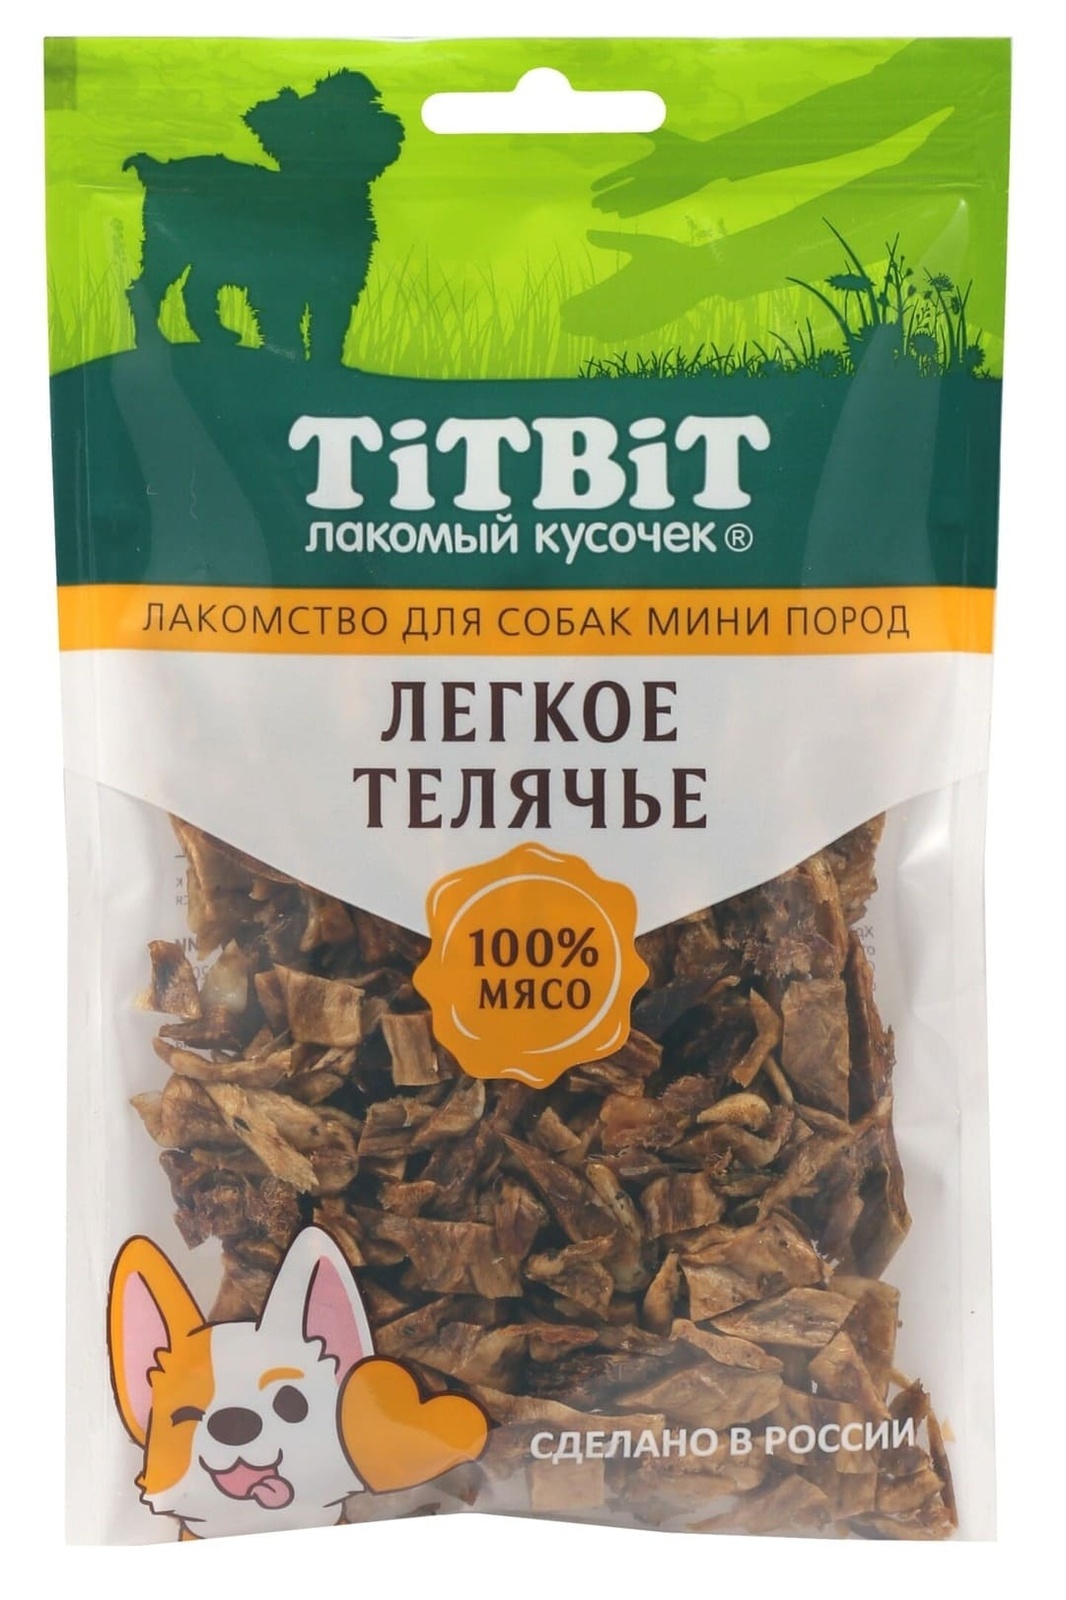 TiTBiT TiTBiT легкое телячье для собак мини пород (50 г) titbit titbit легкое телячье для собак мини пород 50 г